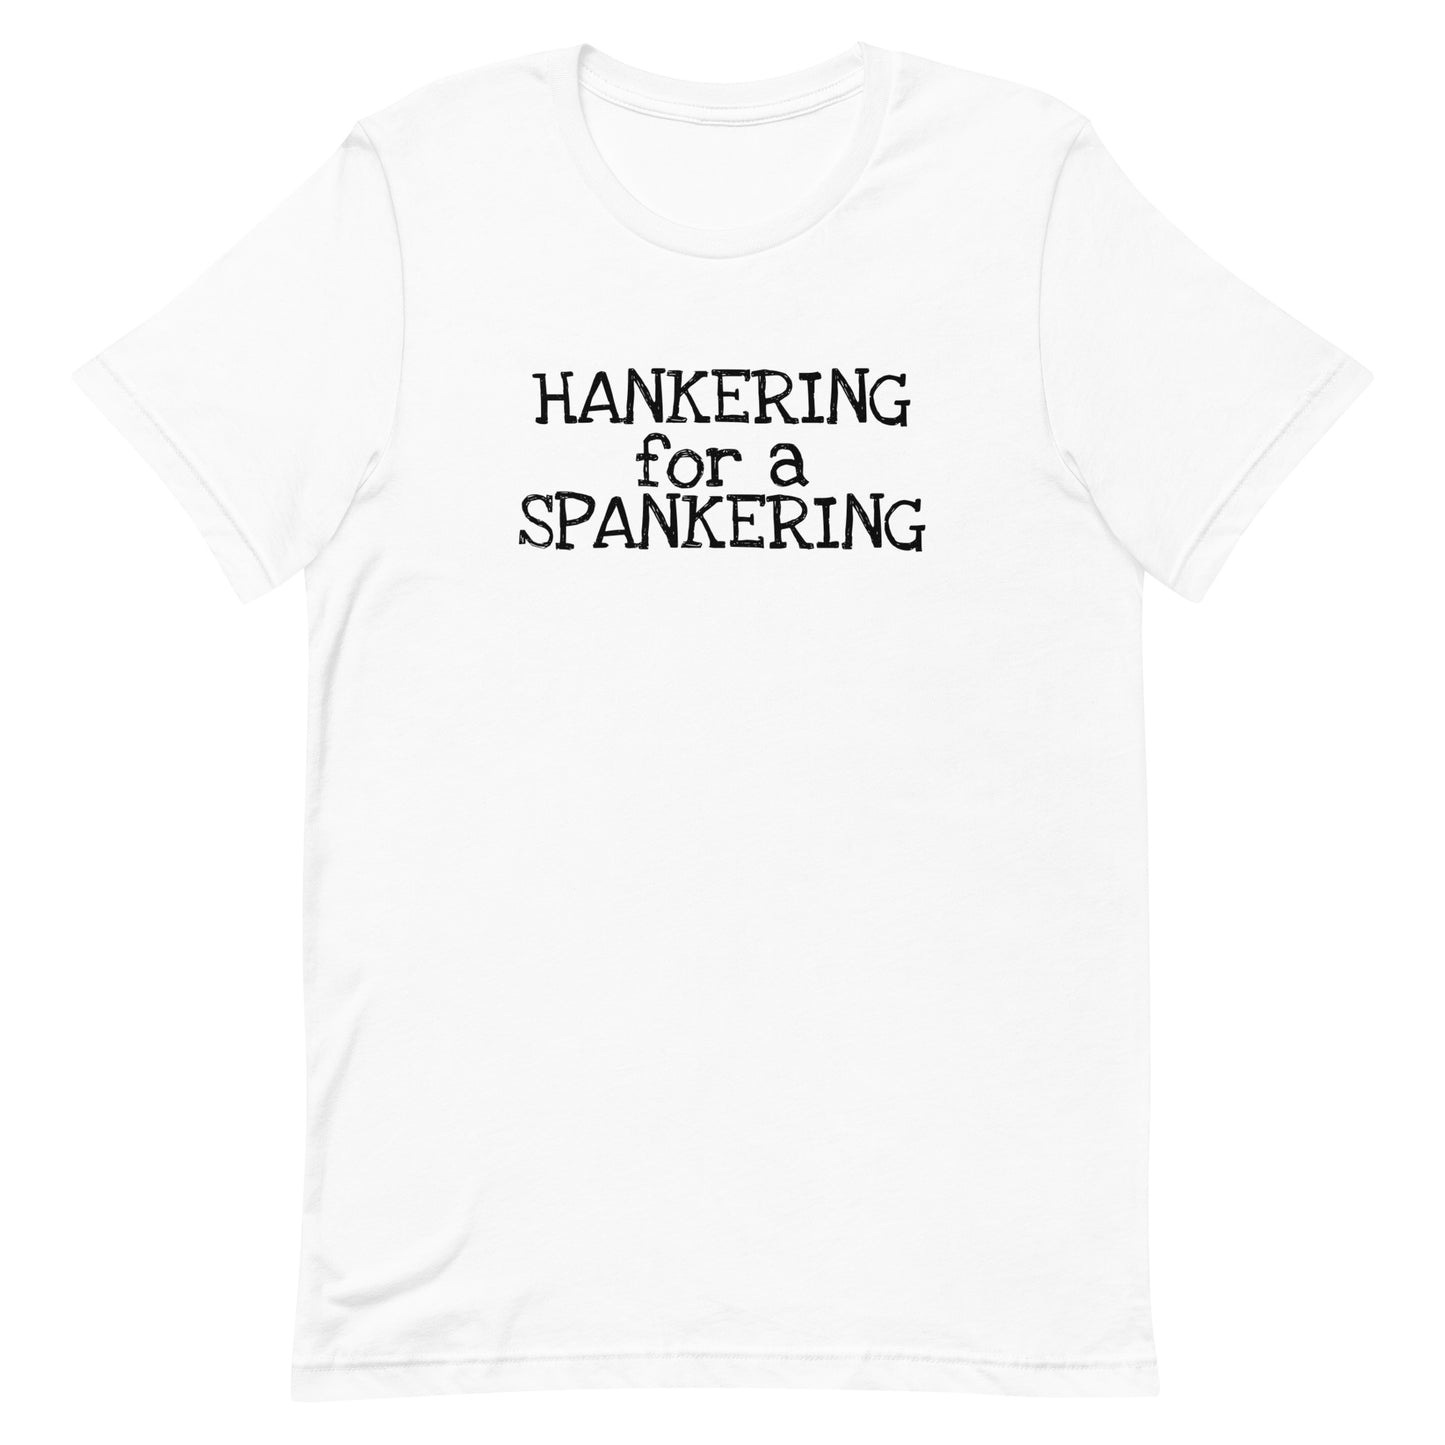 Hankering for a spankering